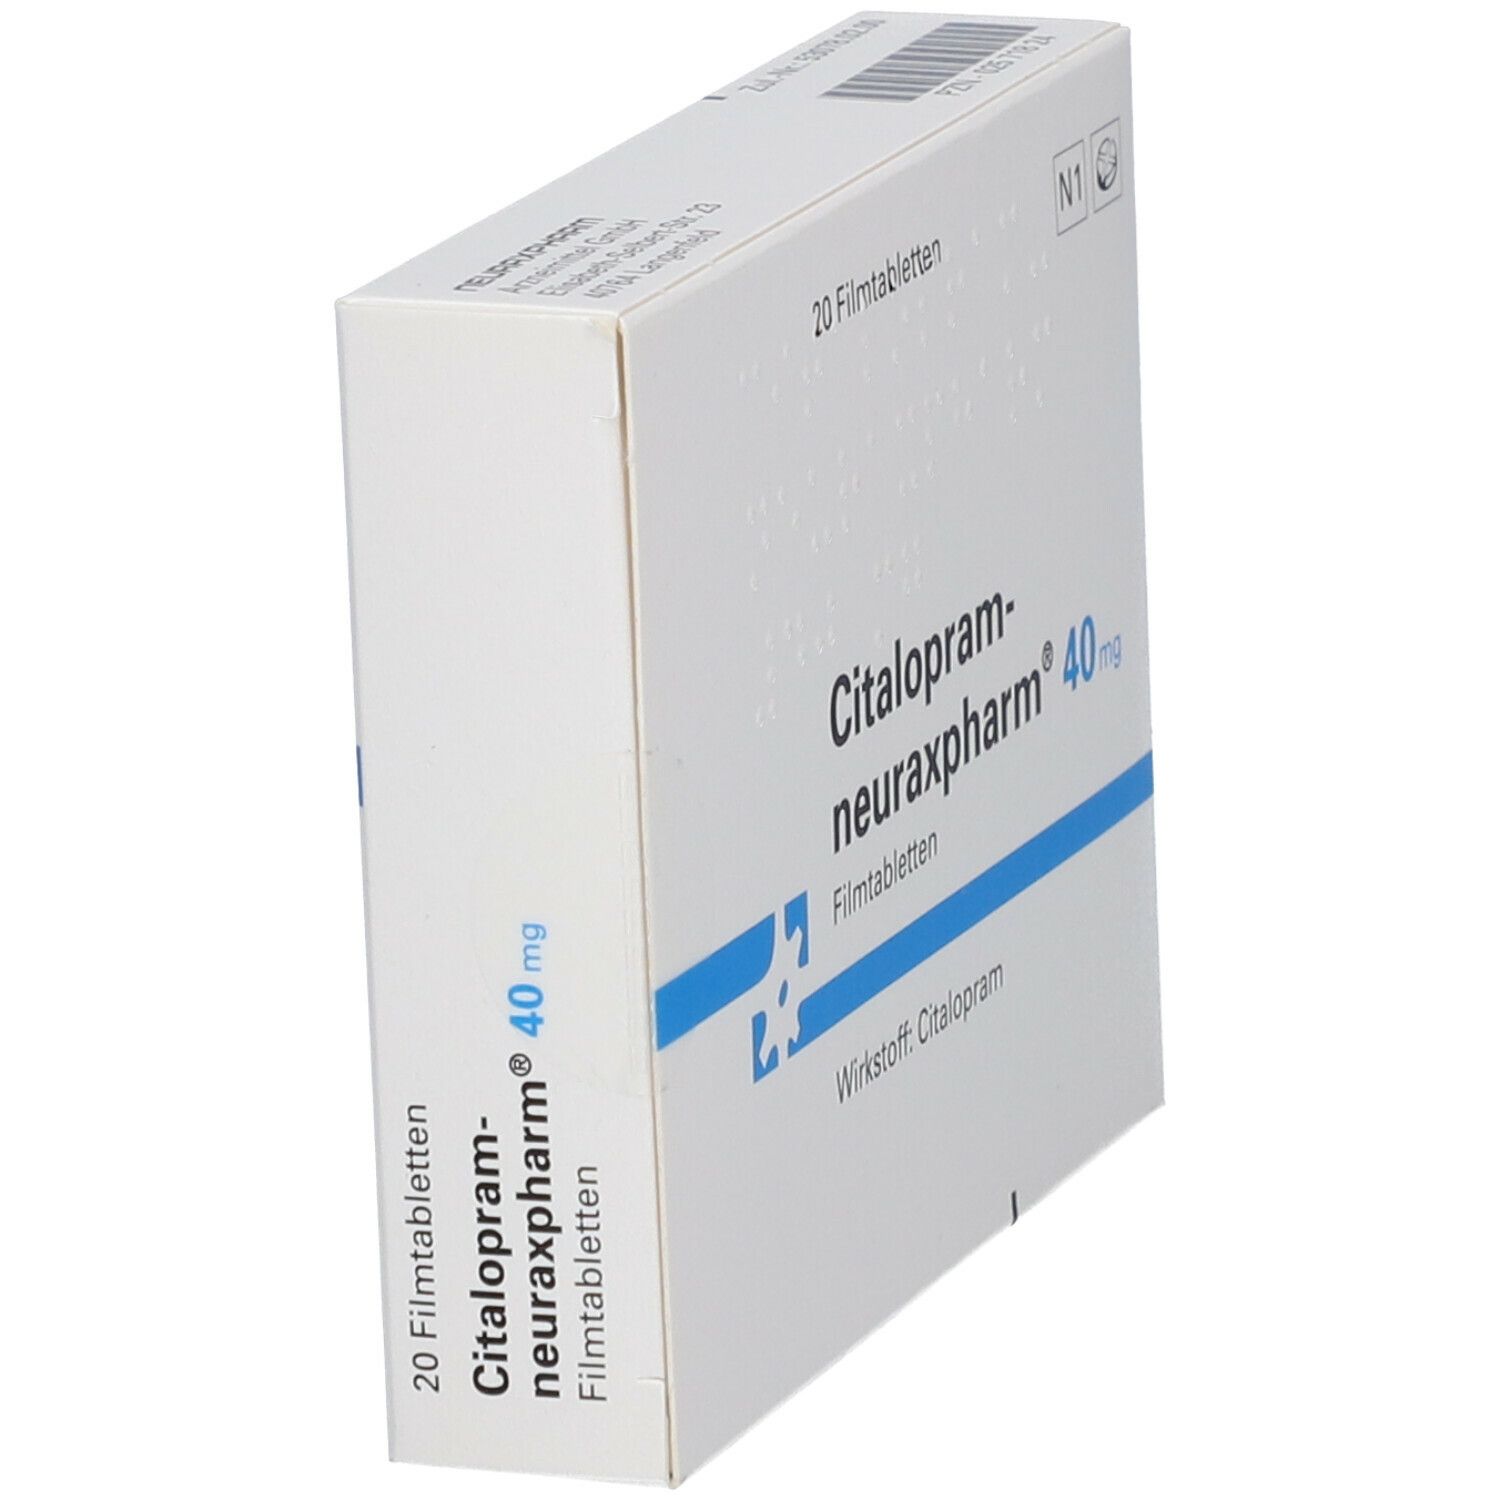 Citalopram-neuraxpharm® 40 mg